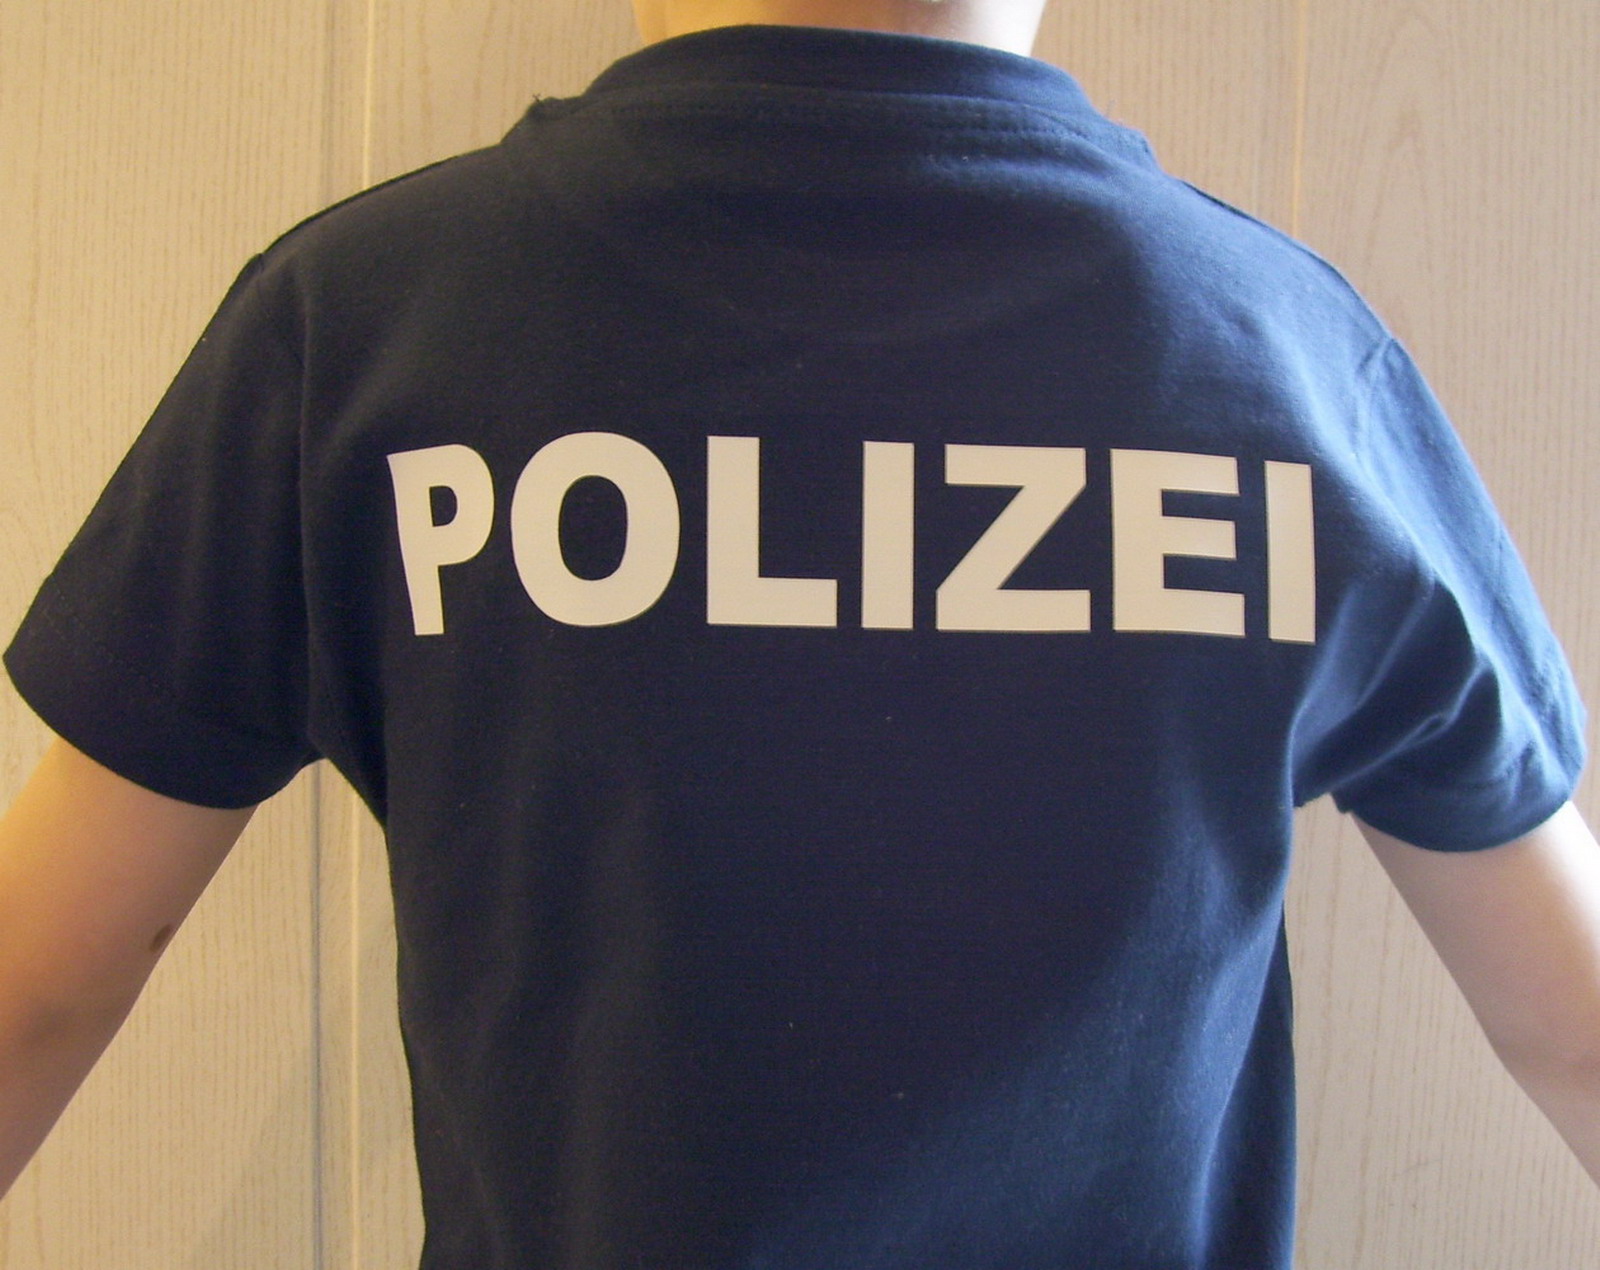 Polizei marineblau T-Shirt, Kinder - Behoerdenshop24